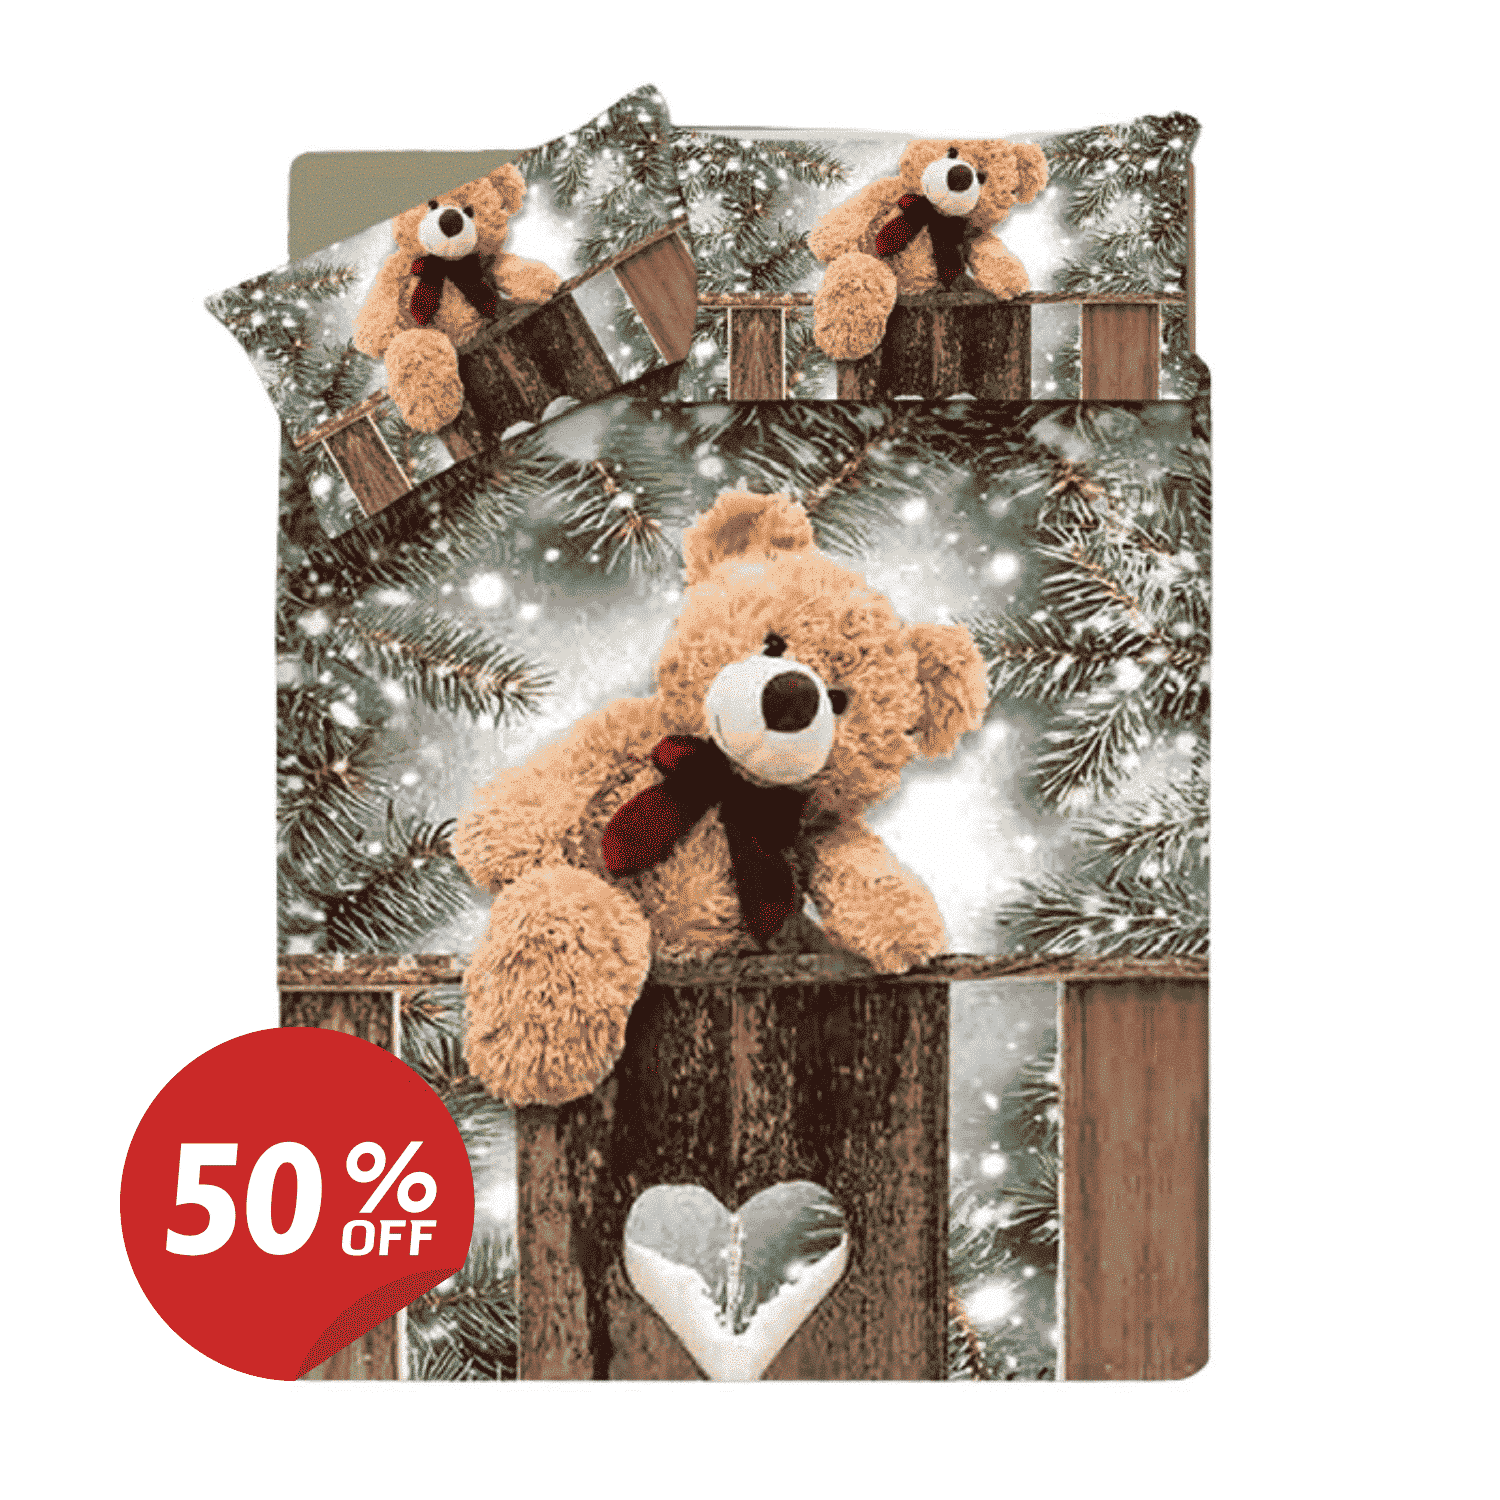 copripiumino-sogni-doro-teddy-bear-stampa-digitale-alta-definizione-orsacchiotto-peluche-natalizio-aghi-pino-luci-natale-neve-cuore-legno-50